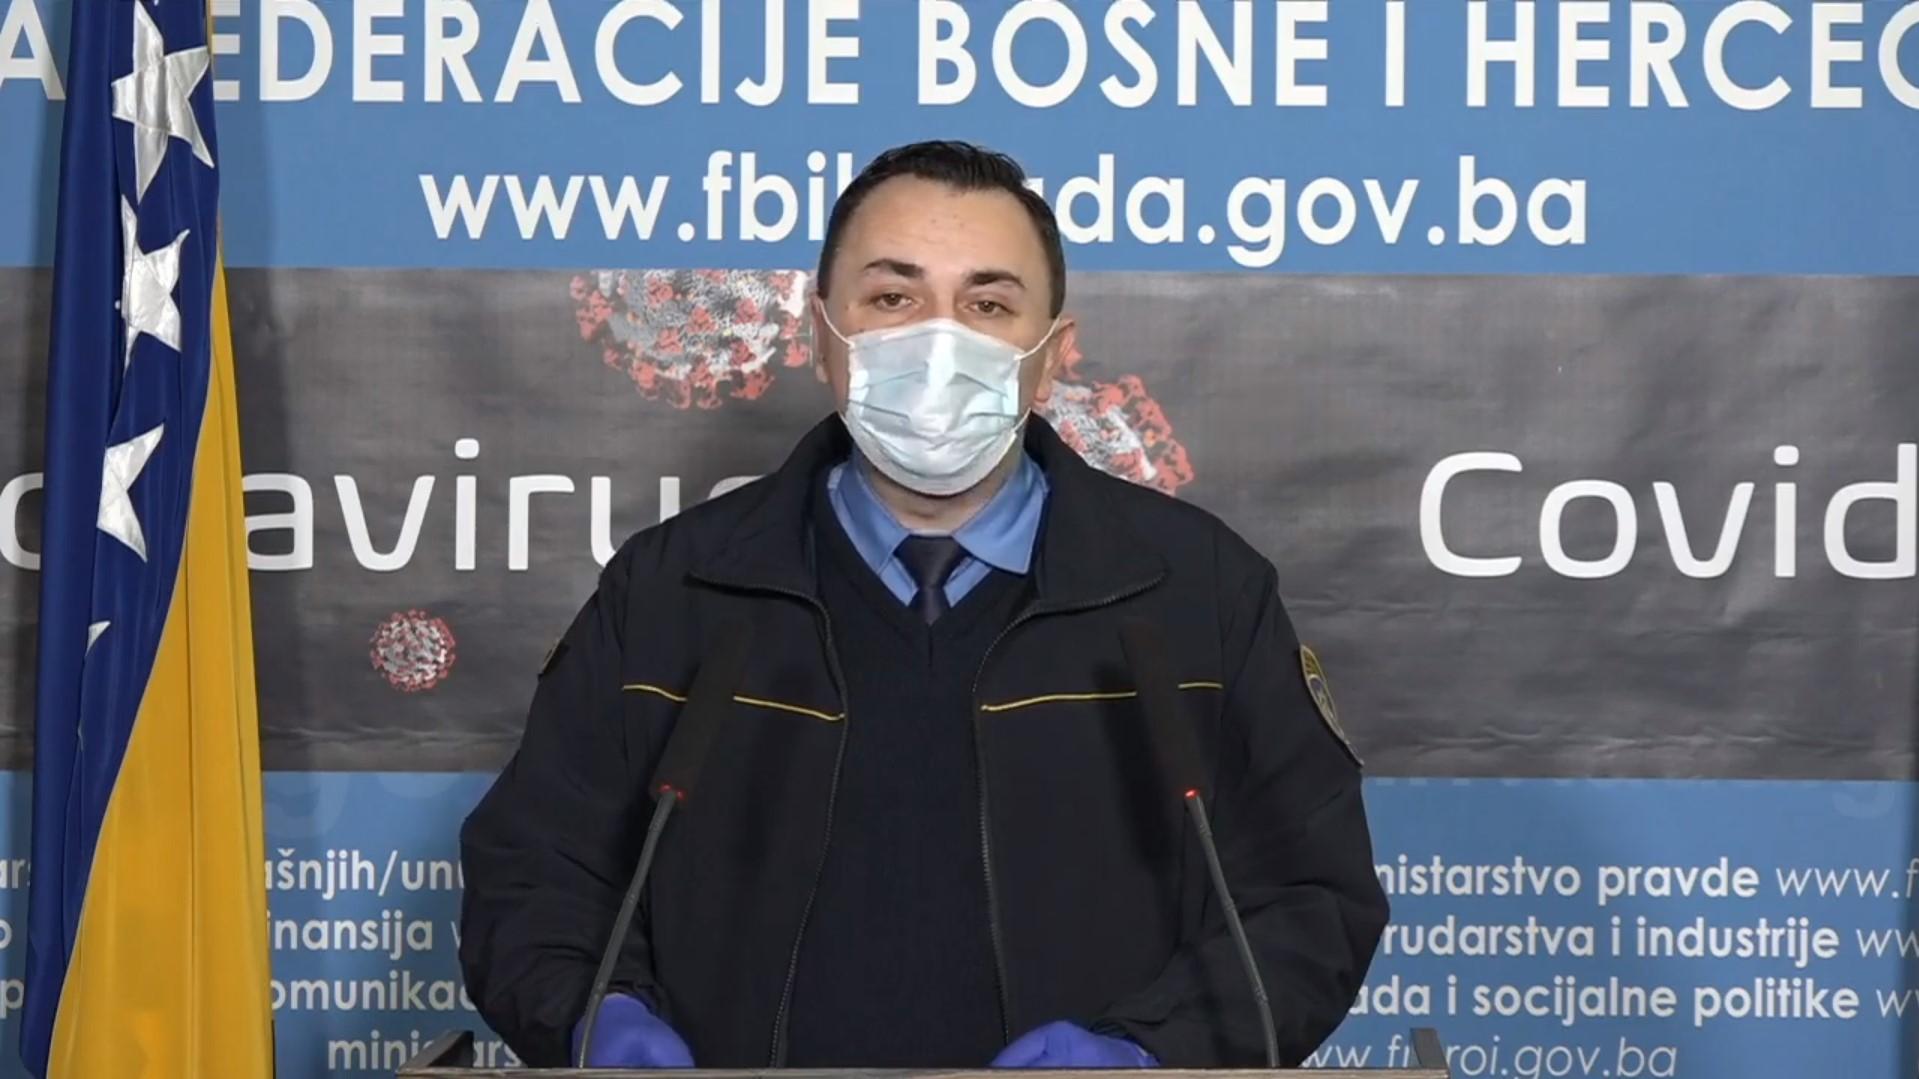 Ajdinović: U FBiH do sada izdato 1.079 rješenja o karantinu